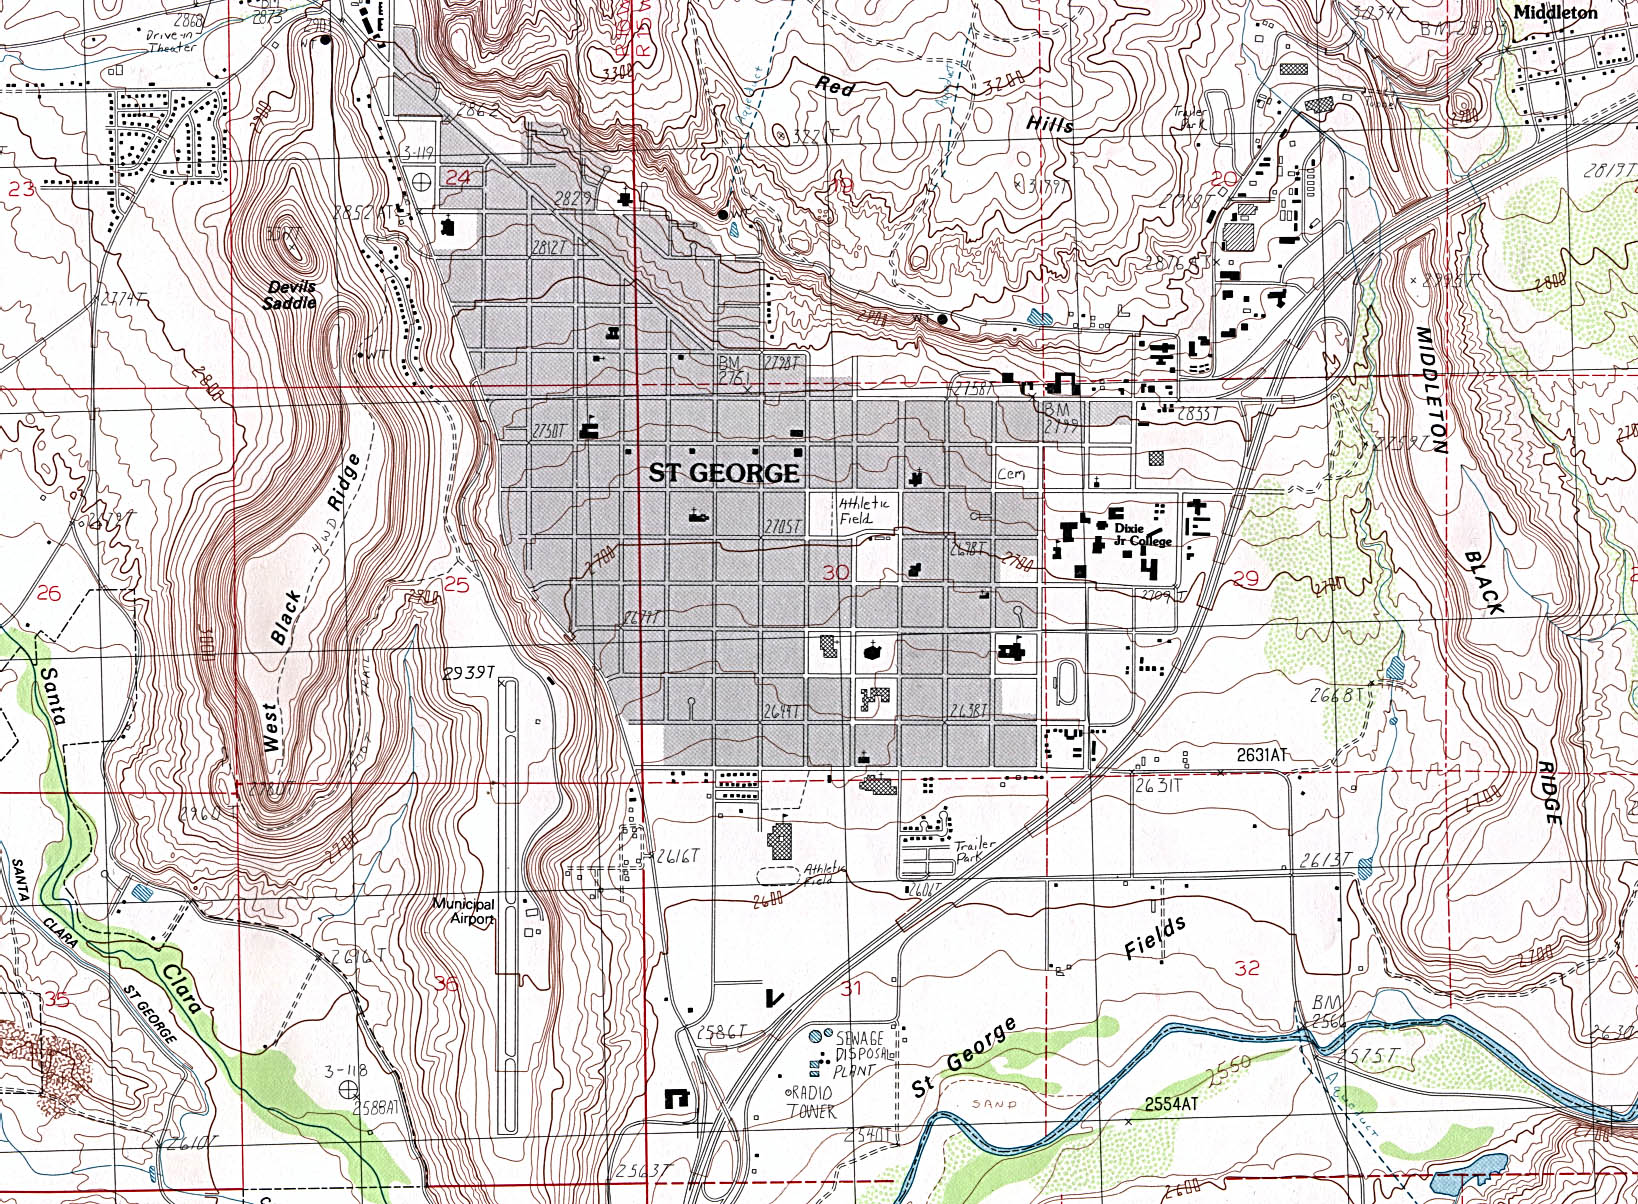 Mapa Topográfico de la Ciudad de St. George, Utah, Estados Unidos